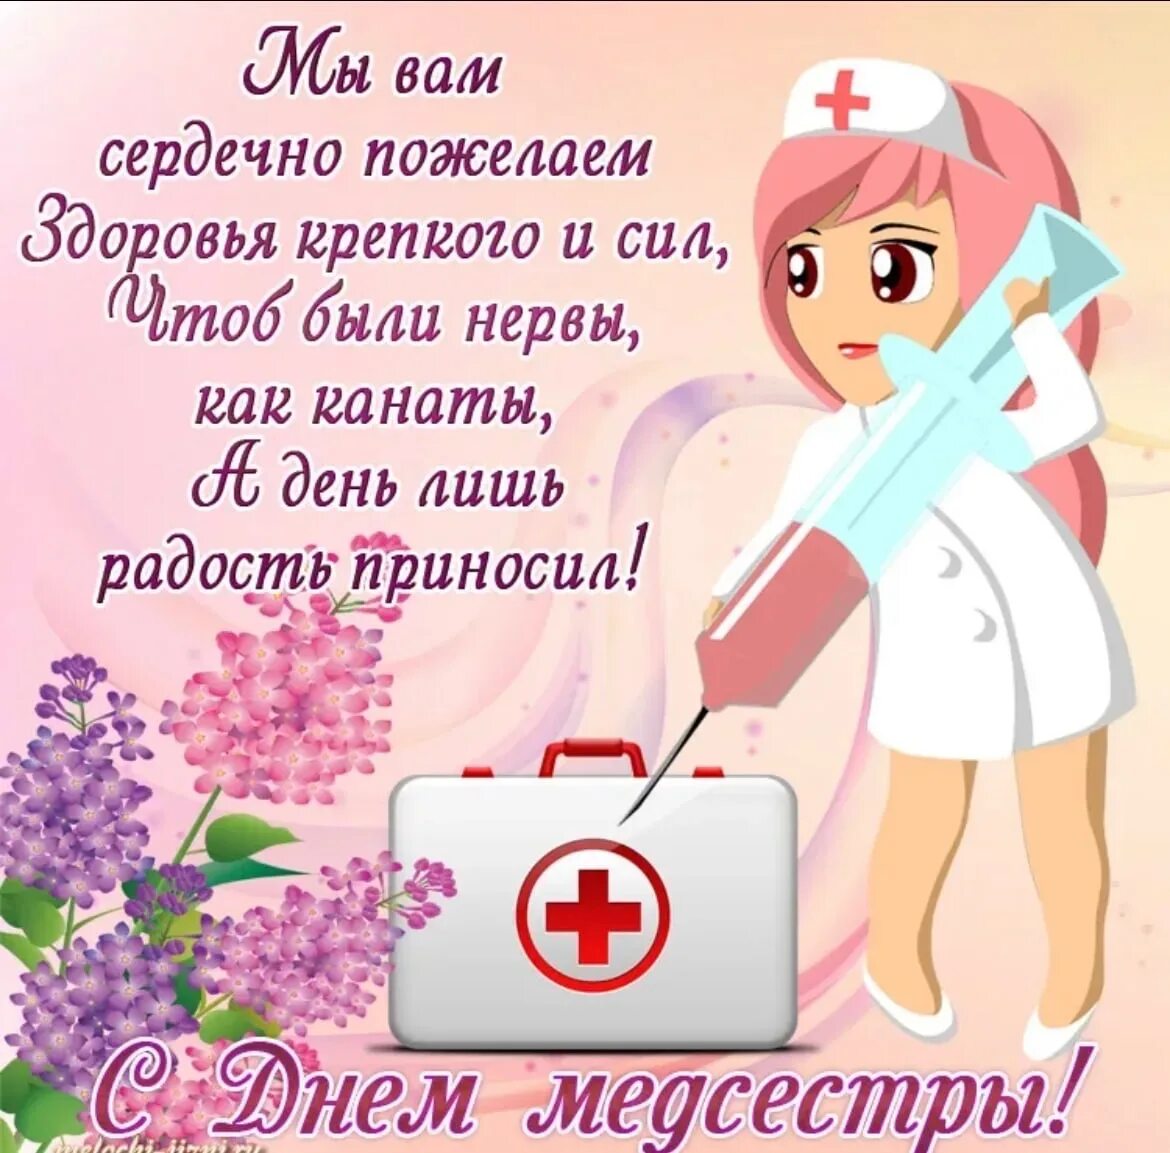 12 мая день медицинской сестры. С днем медицинской сестры. С днём медицинской сестры поздравления. Поздравления с днём медсестры. С днём медсестры открытки.